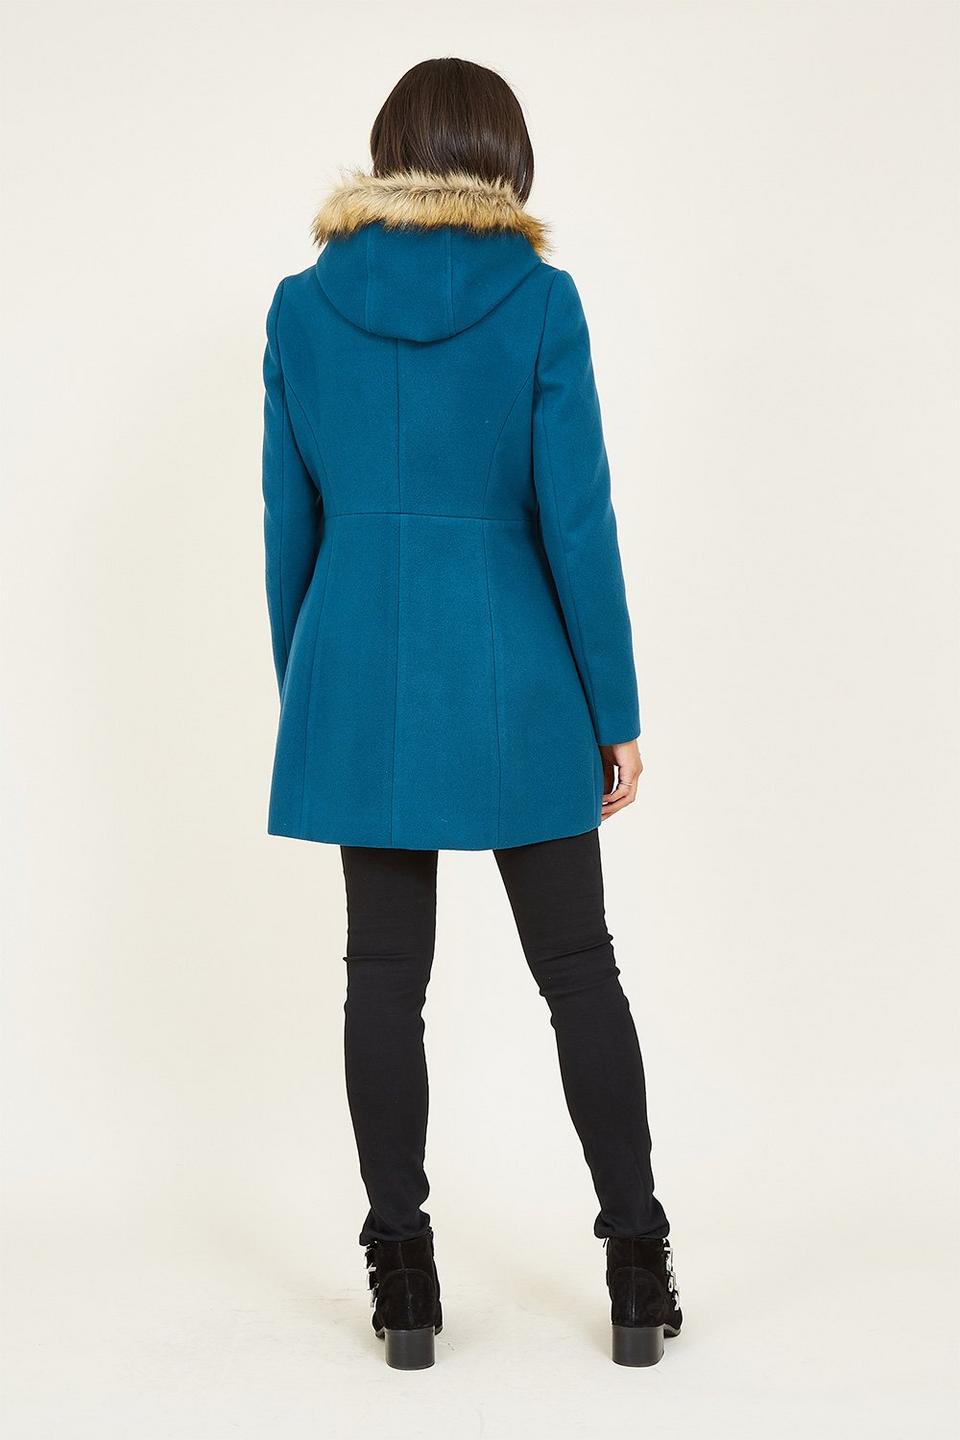 Jackets & Coats | 'Eilish' Duffle Coat With Fur Trim Hood in Teal | Yumi